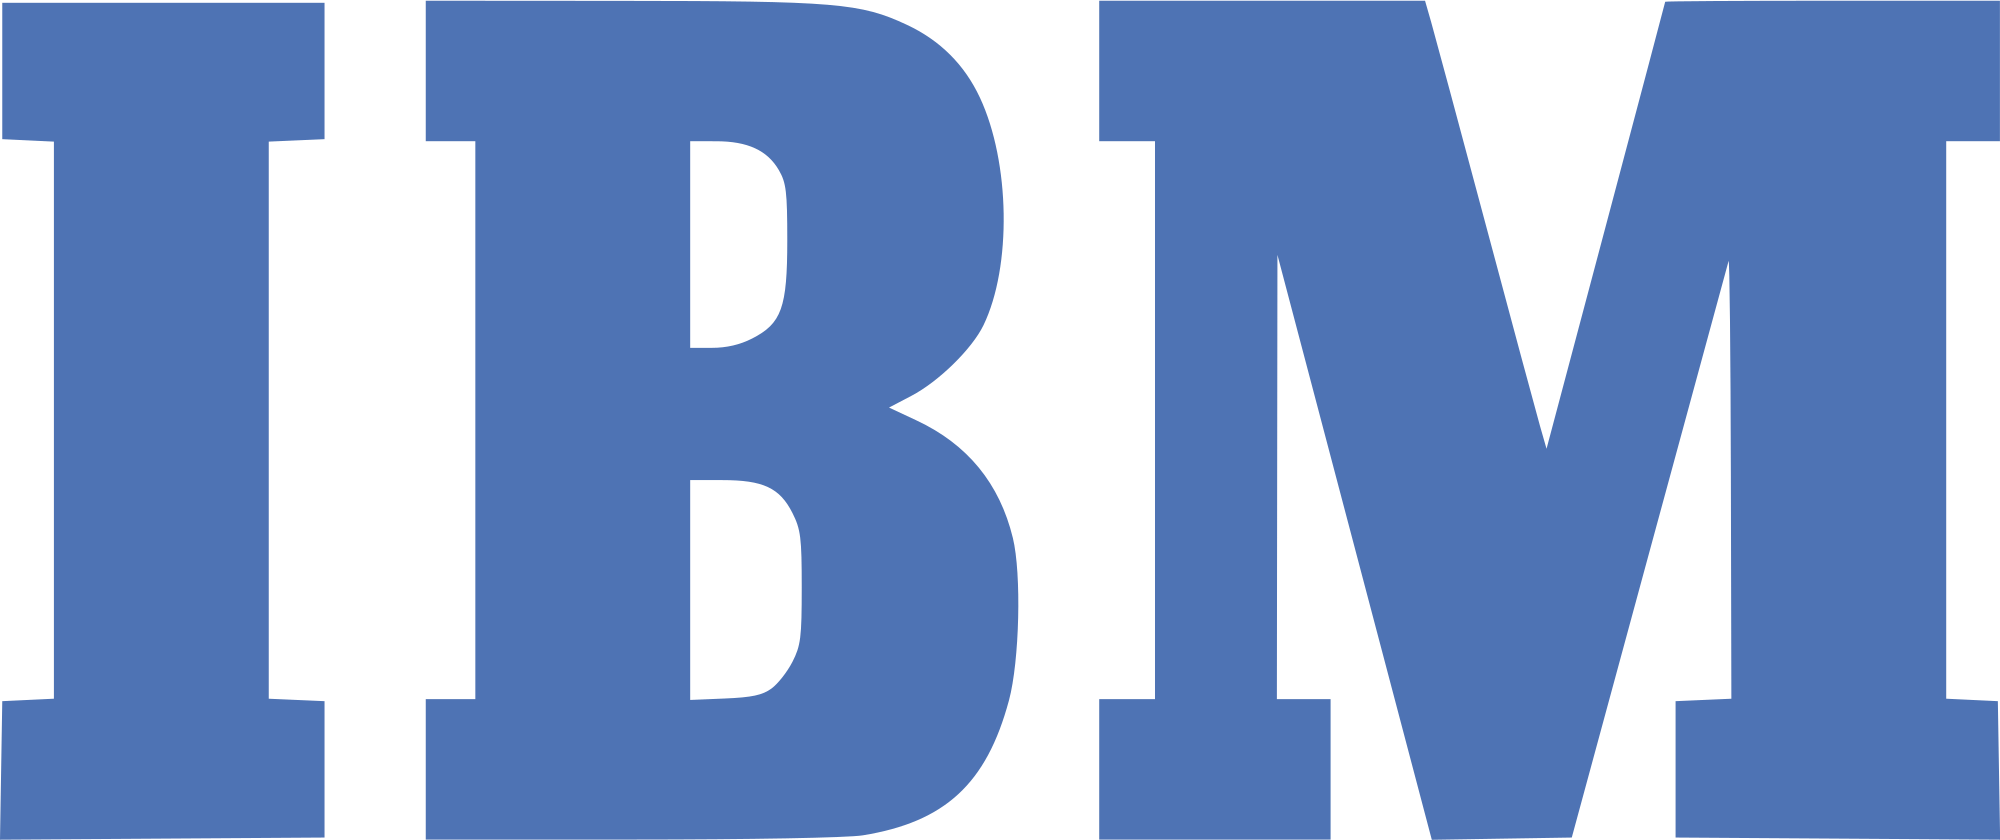 Фирма ИБМ. IBM лого. IBM компания. IBM товарный знак. Айбиэм